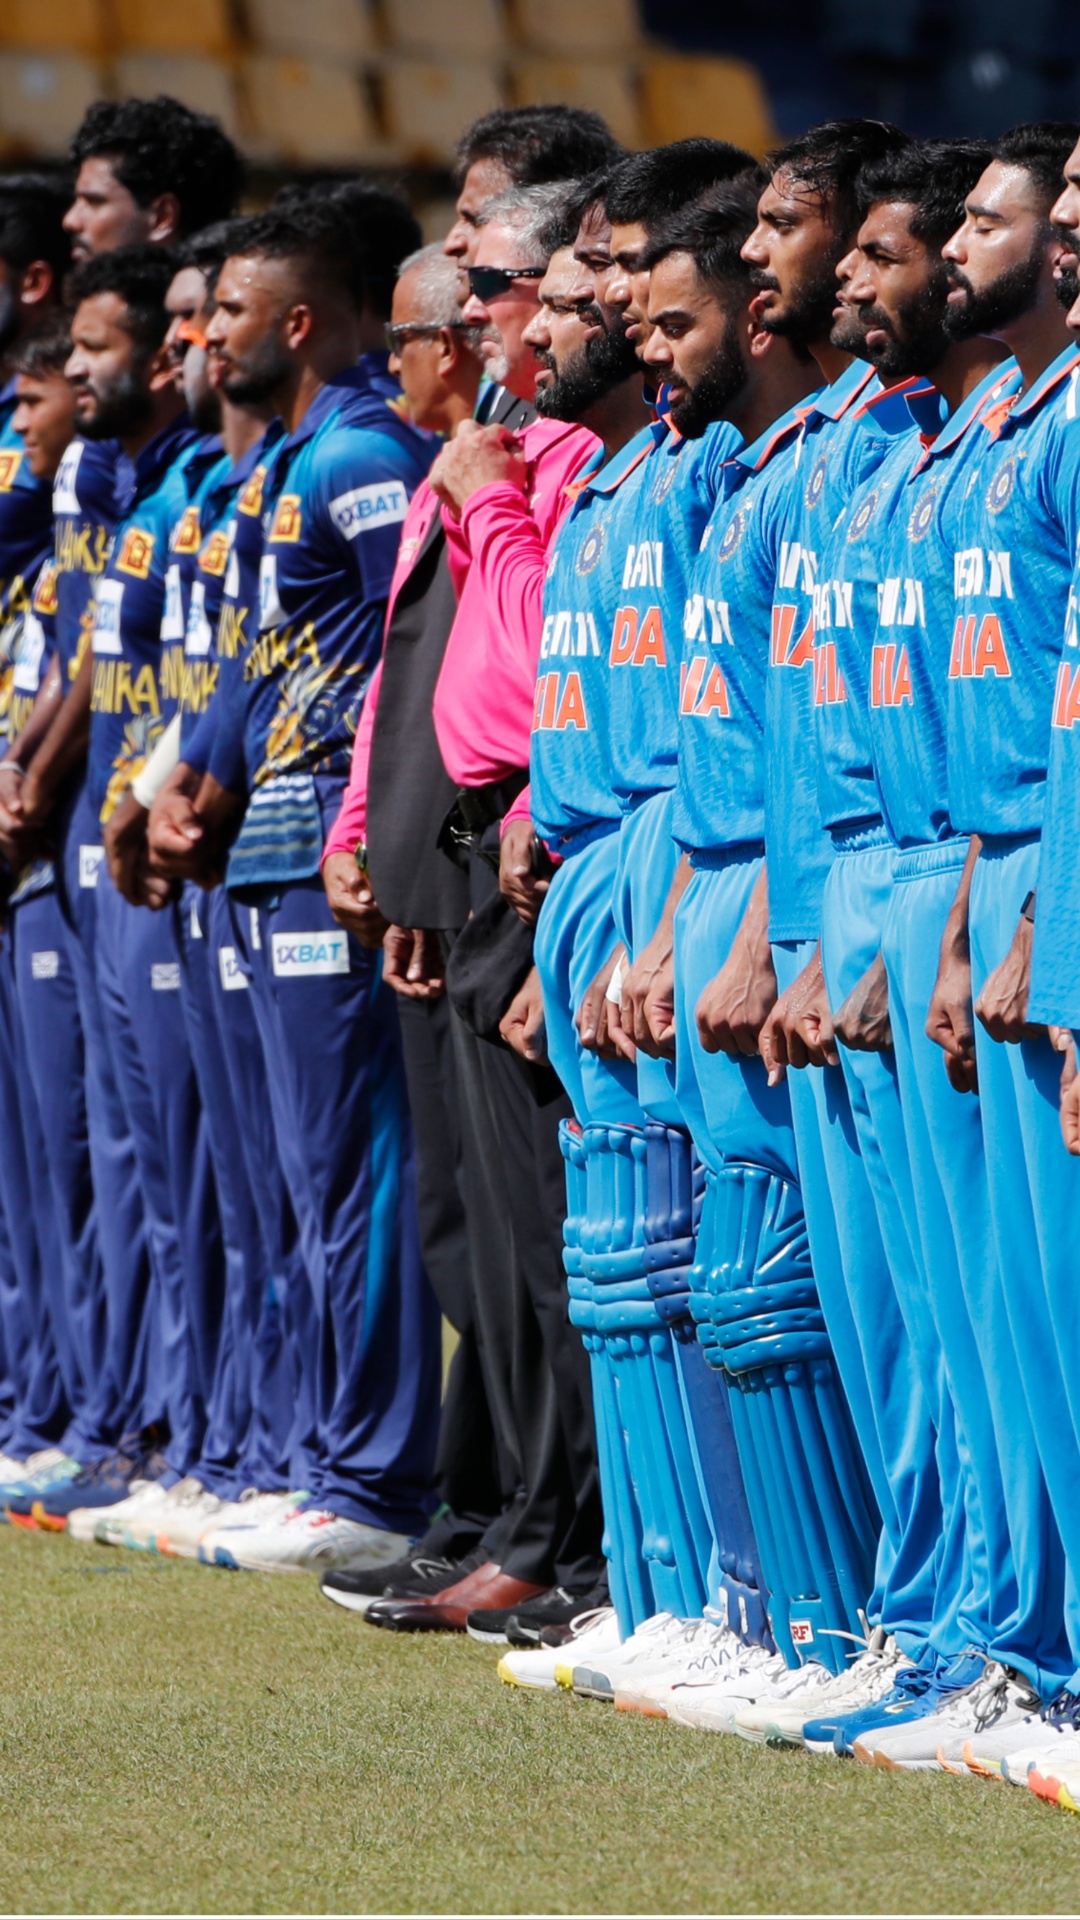 वनडे एशिया कप में सबसे ज्यादा फाइनल खेलने वाली टीमों की लिस्ट, टीम इंडिया दूसरे स्थान पर